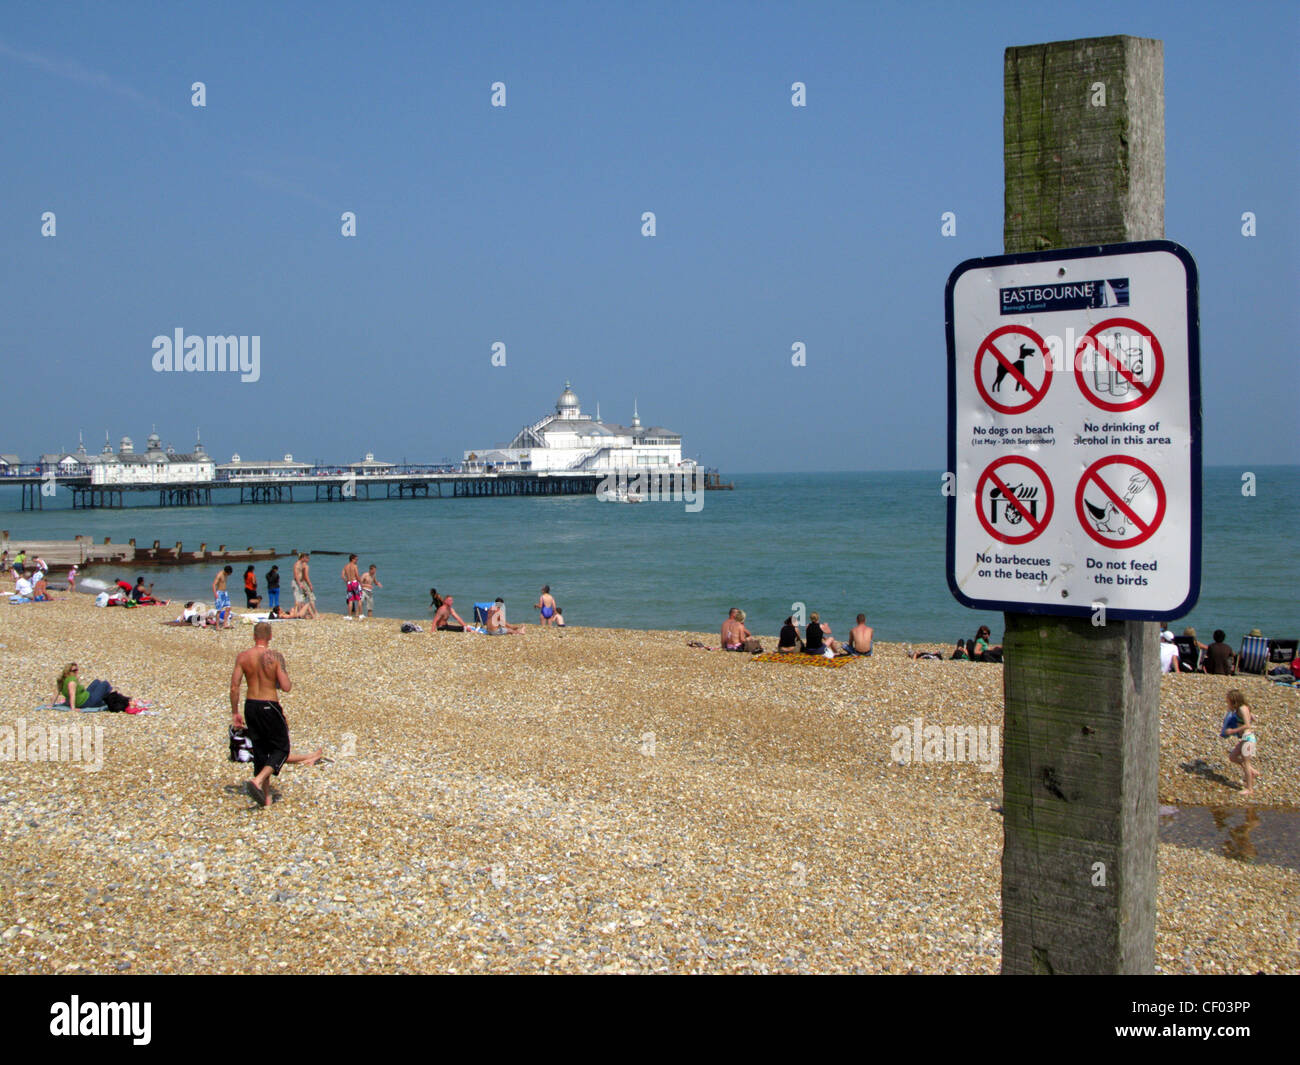 La playa y el muelle Easbourne, East Sussex. Señal de advertencia: No hay perros, no beber alcohol, no barbacoas, no se alimentan las aves Foto de stock